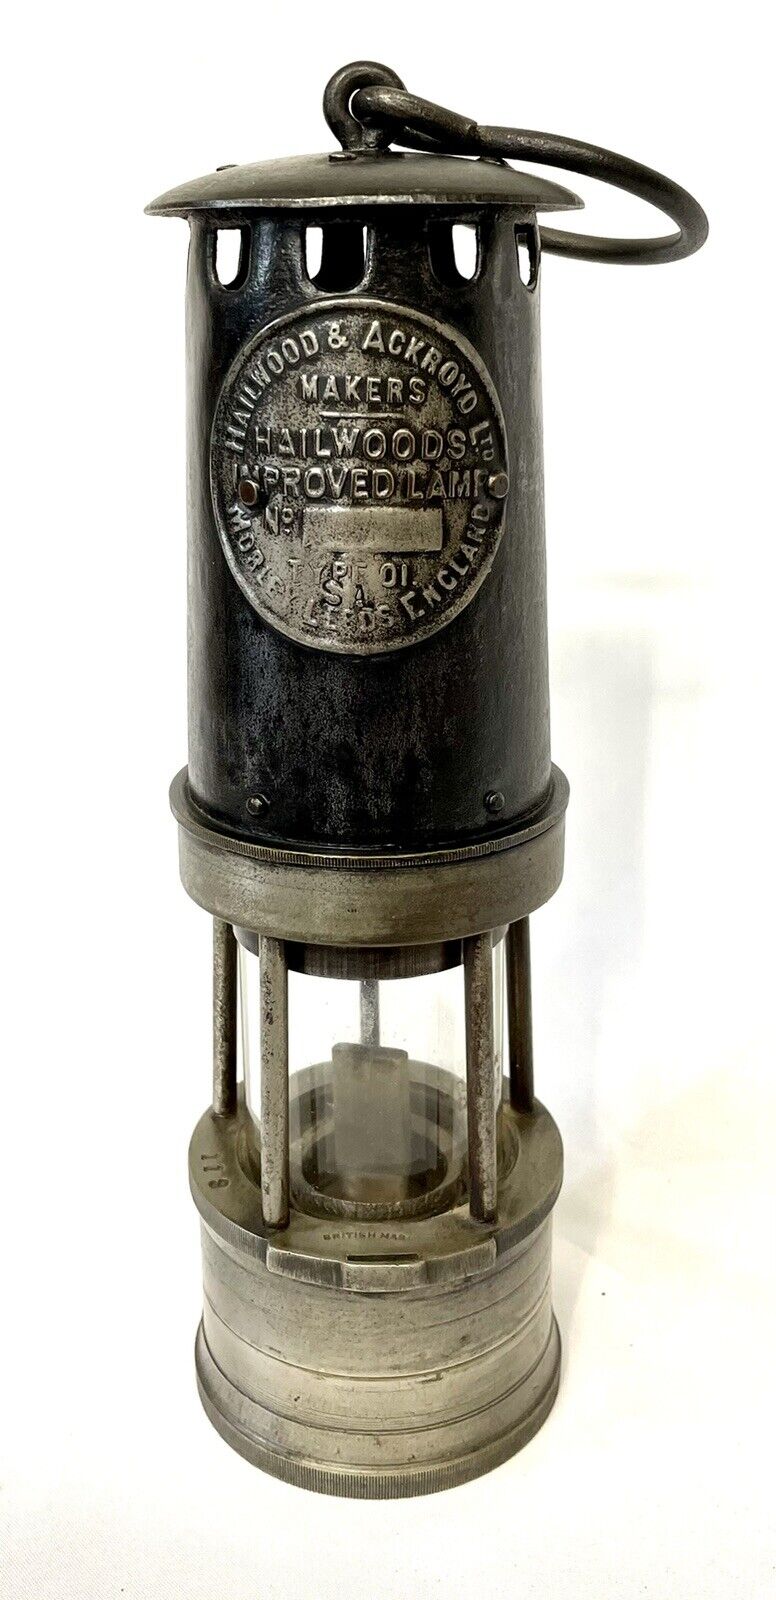 Original Vintage Hailwood & Ackroyd Ltd Miners Improved Lamp Type 1 SA No 119